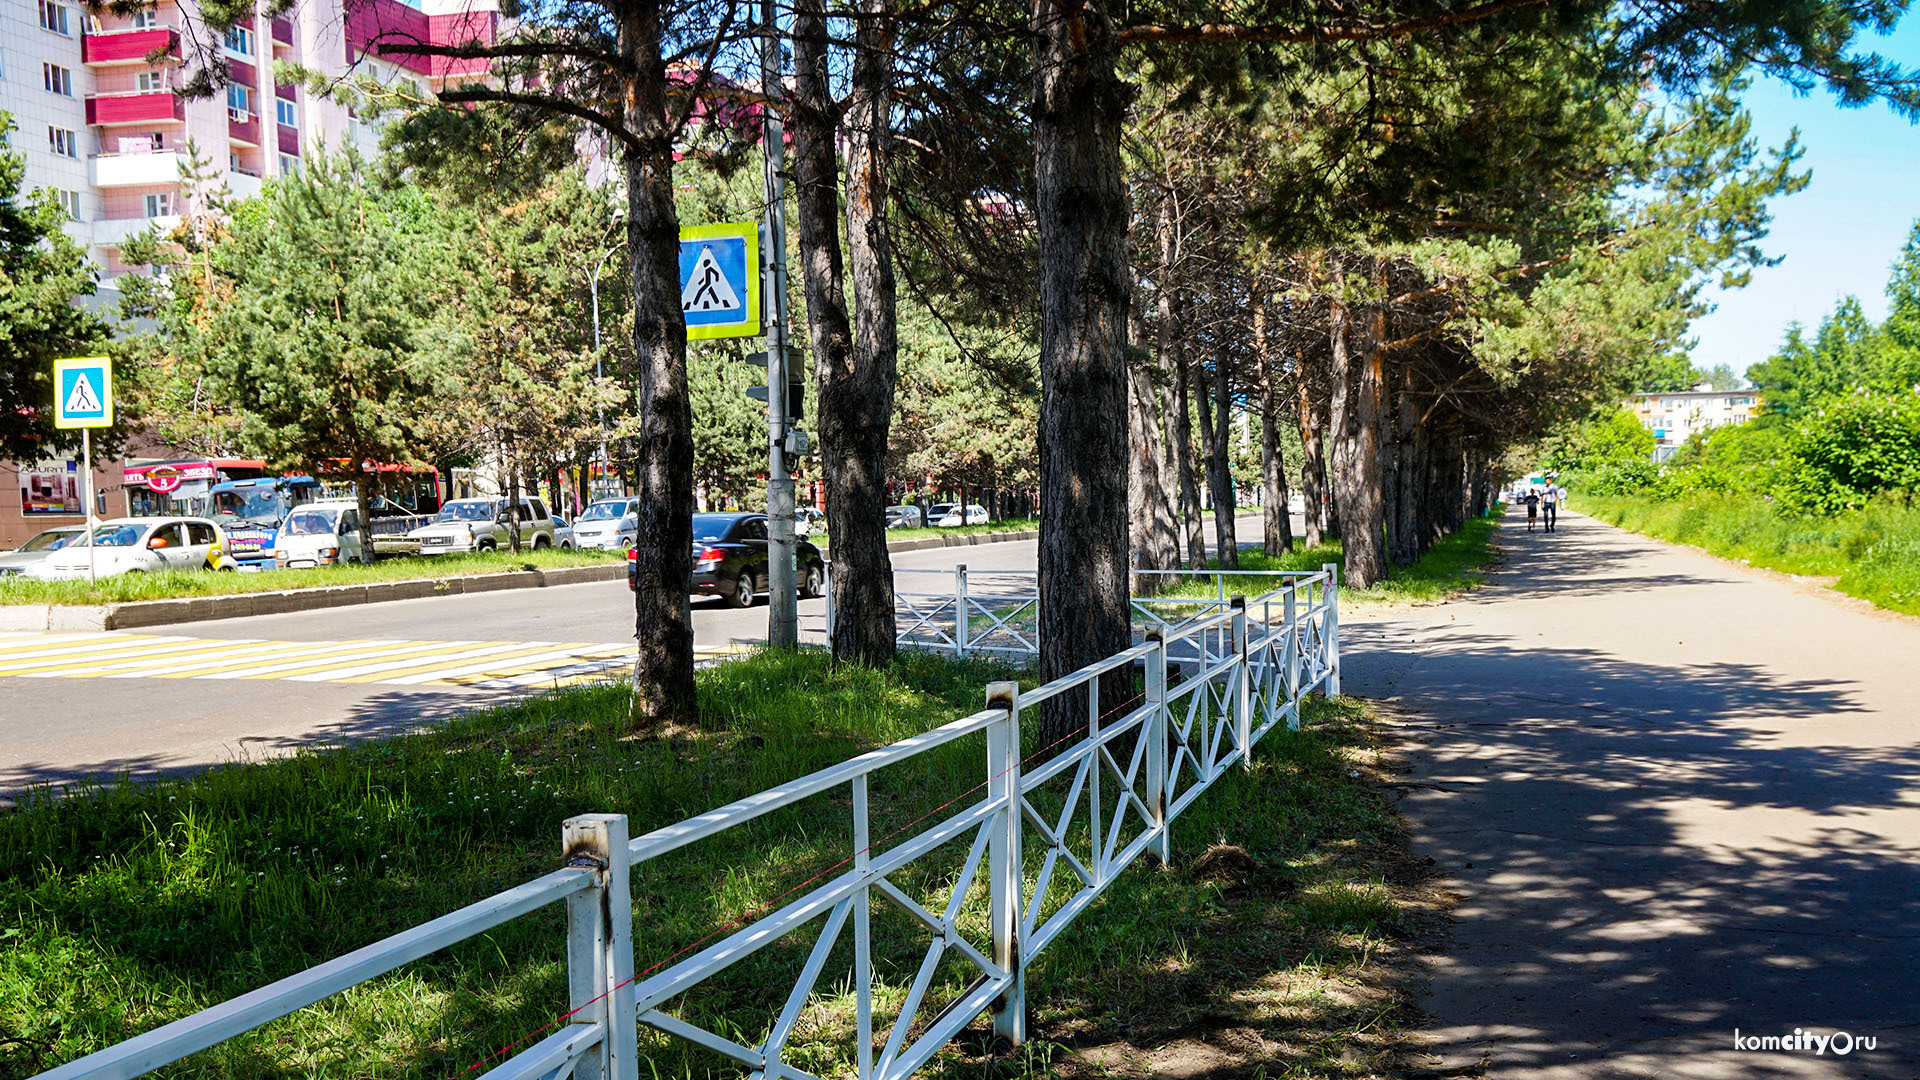 Ещё больше пешеходных переходов озаборят в Комсомольске